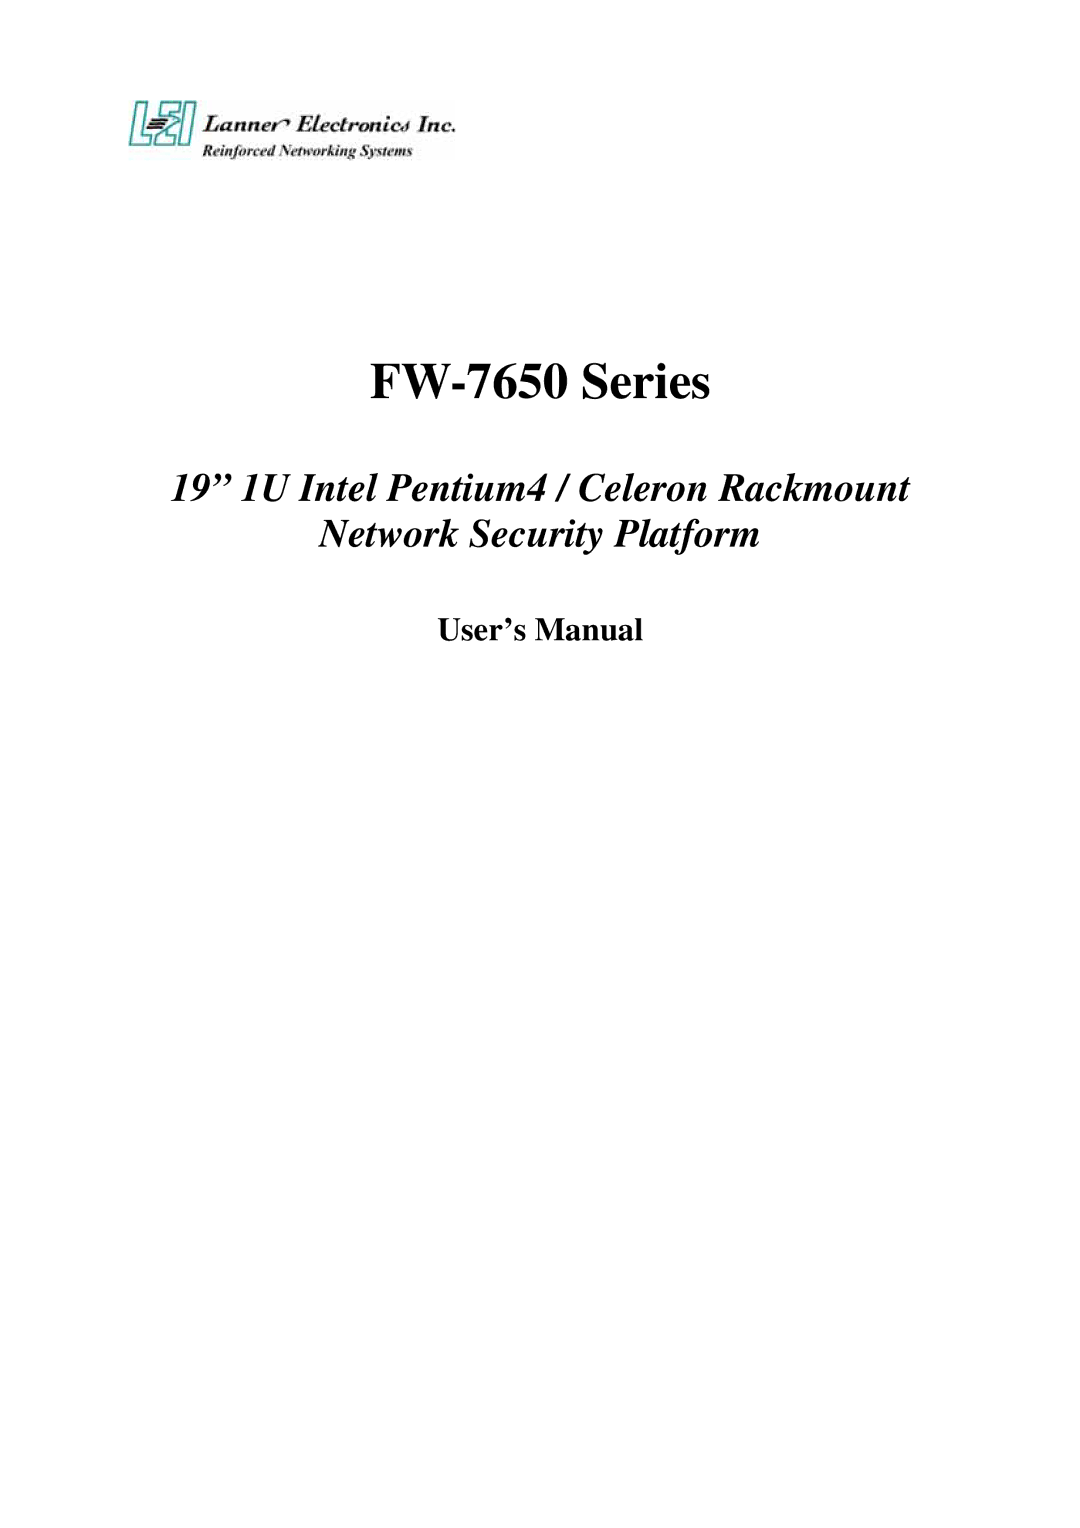 Lanner electronic manual FW-7650 Series, User’s Manual 